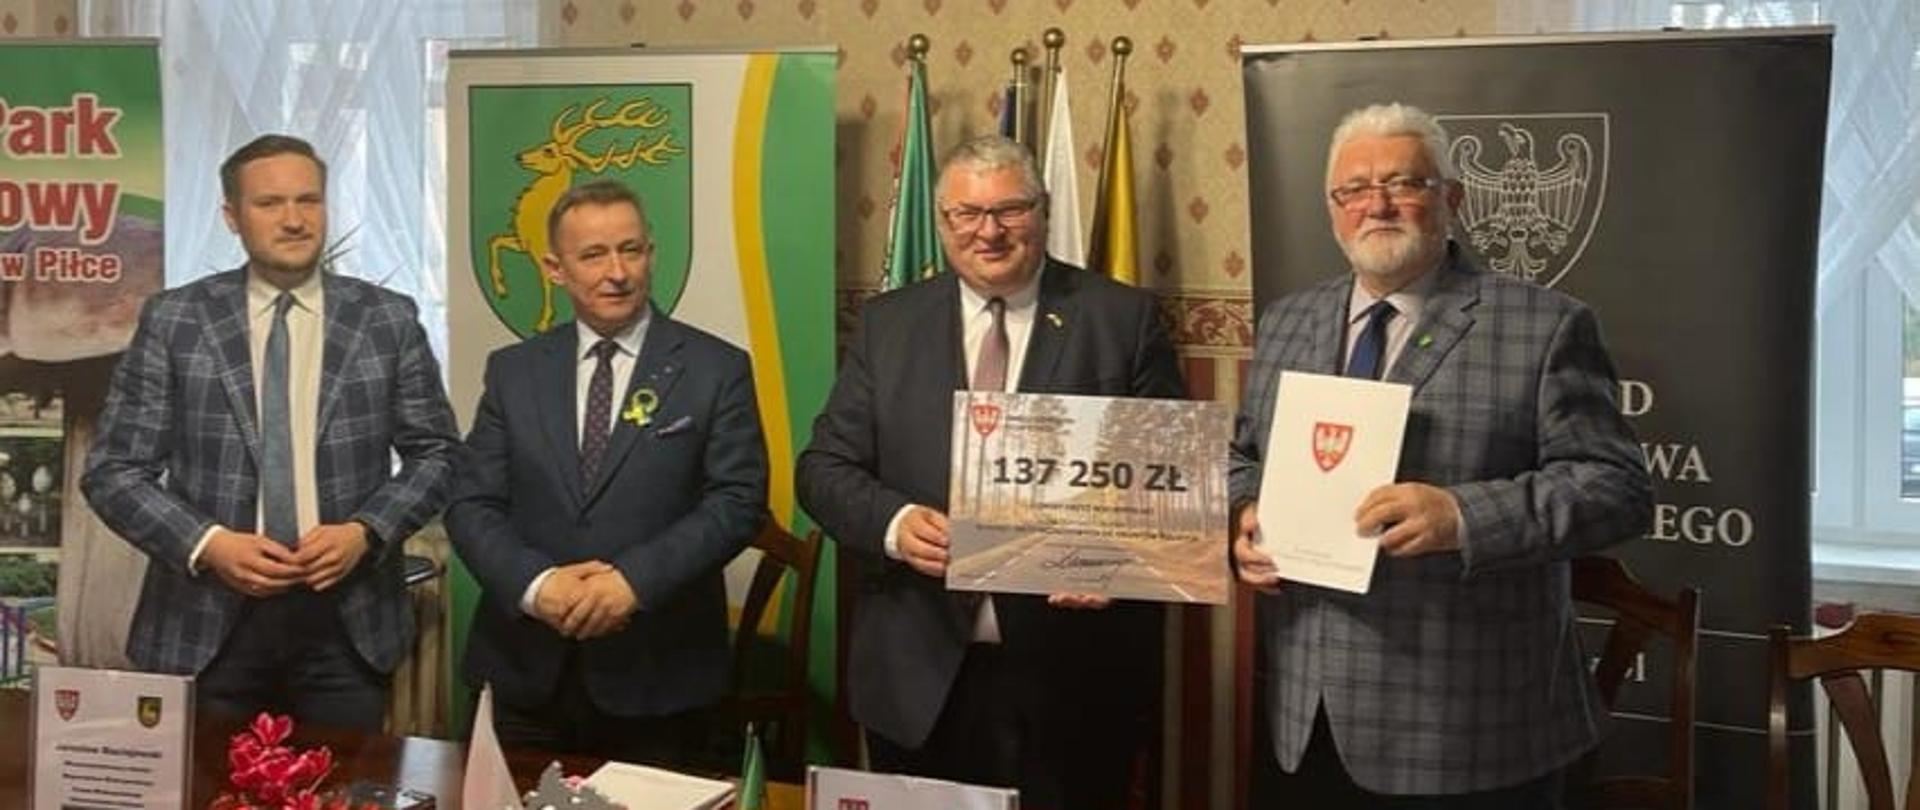 Podpisanie umowy na dofinansowanie na przebudowę drogi gminnej przez Burmistrza i Marszałka